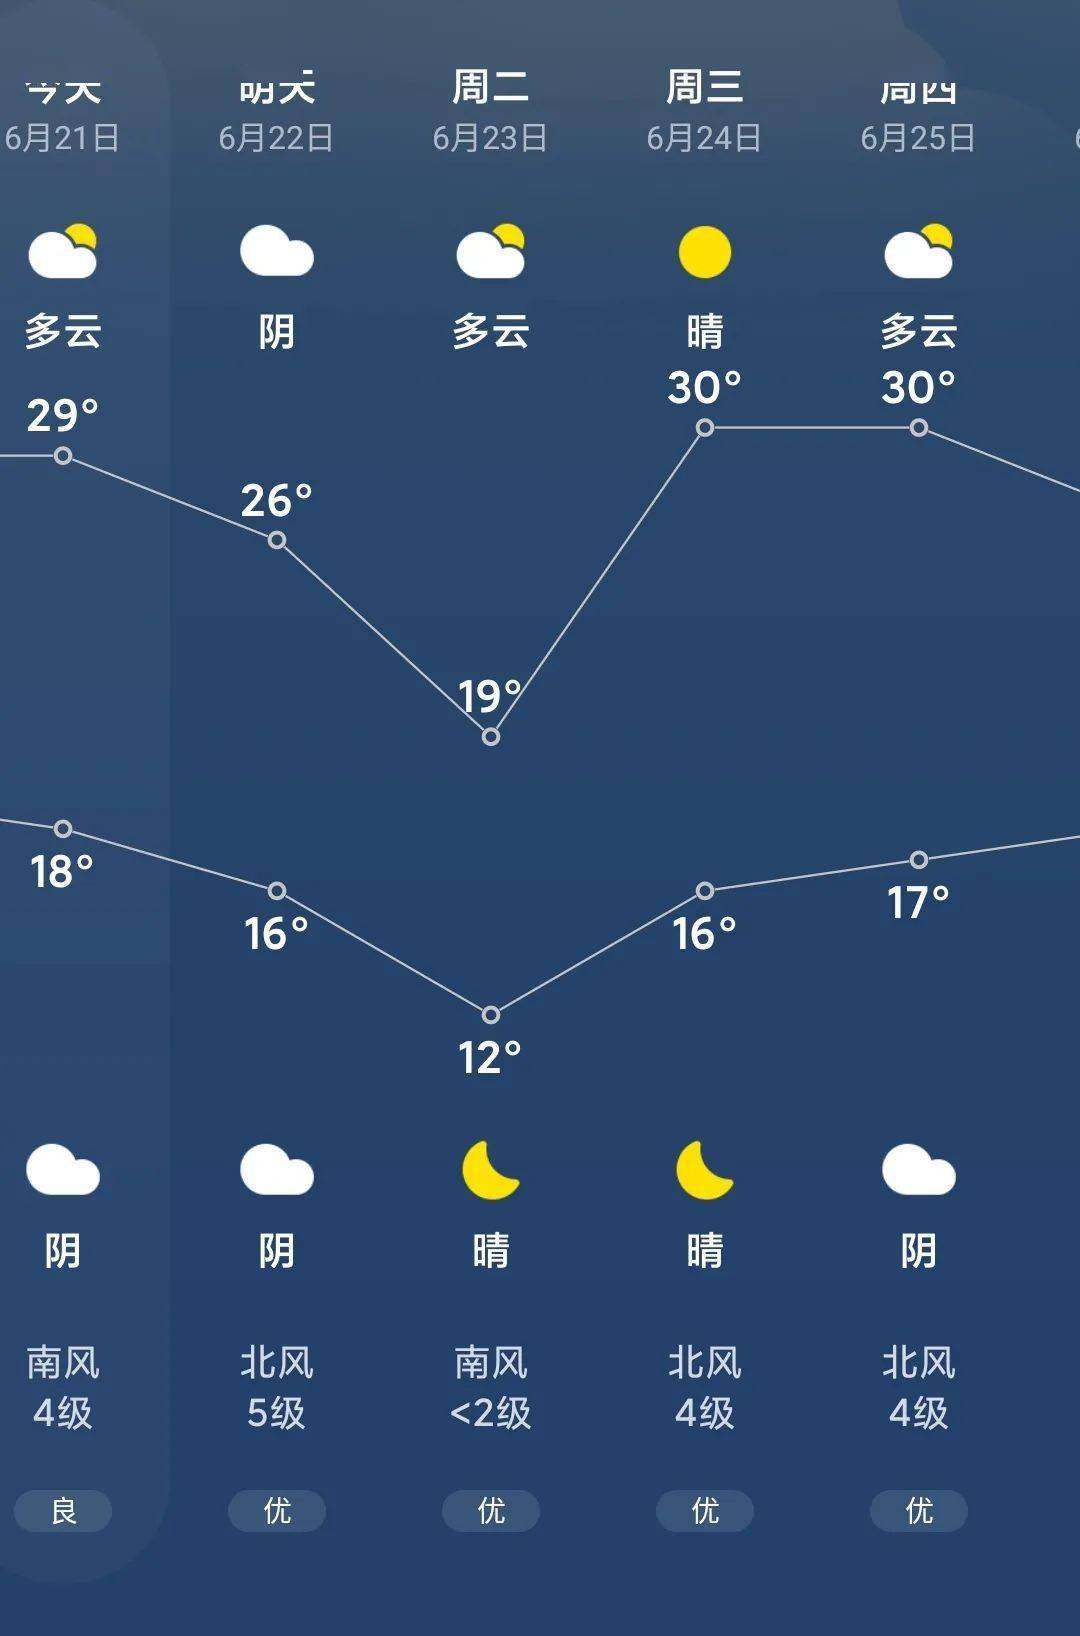 靖边明后两天将降温!未来十天天气预报